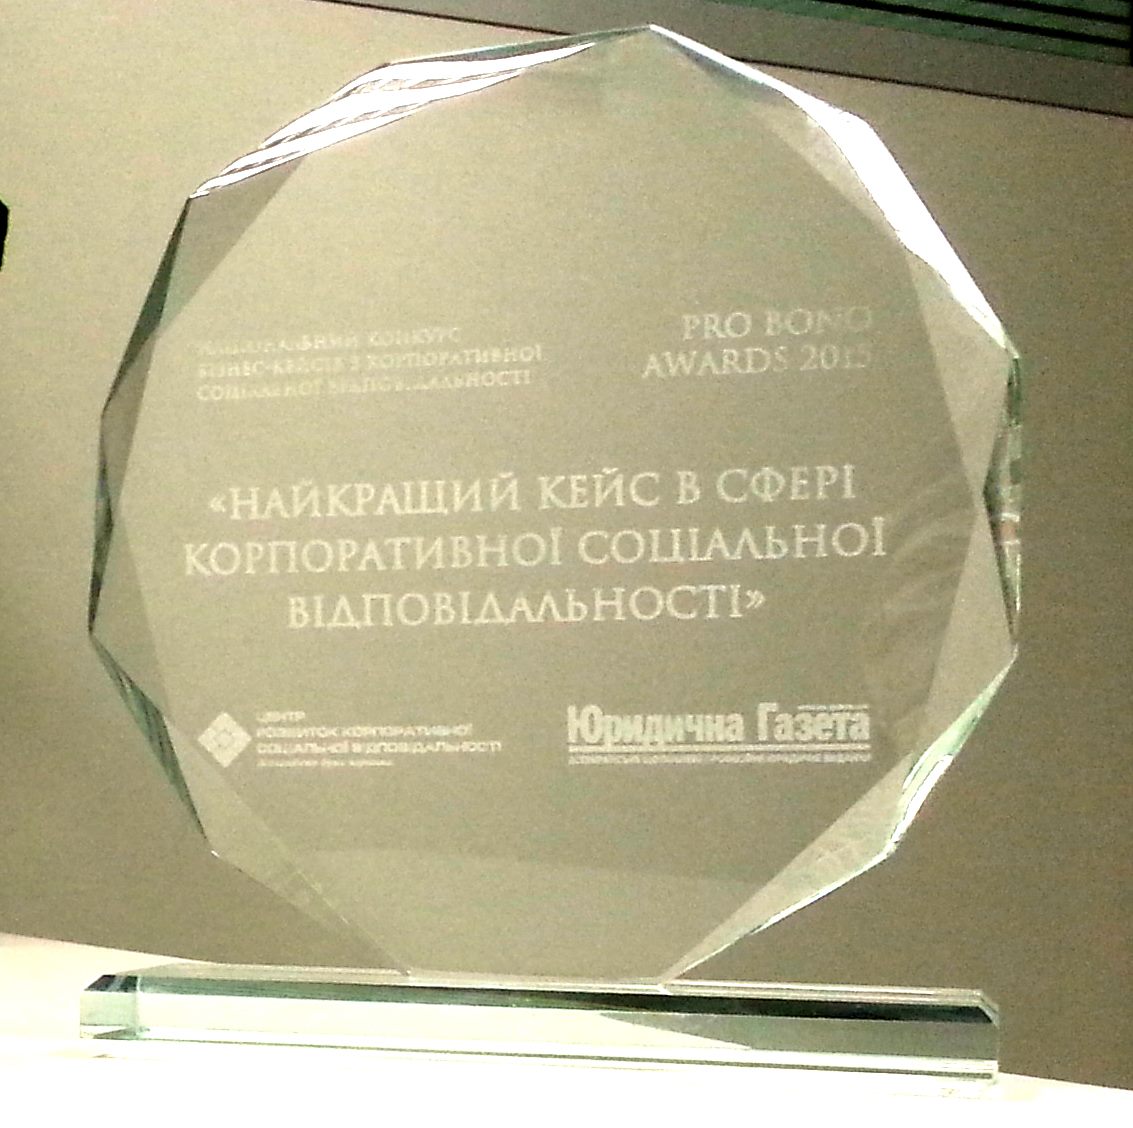 Юридическая школа Европейской Бизнес Ассоциации и Астерс признана лучшим КСО-проектом на украинском юридическом рынке